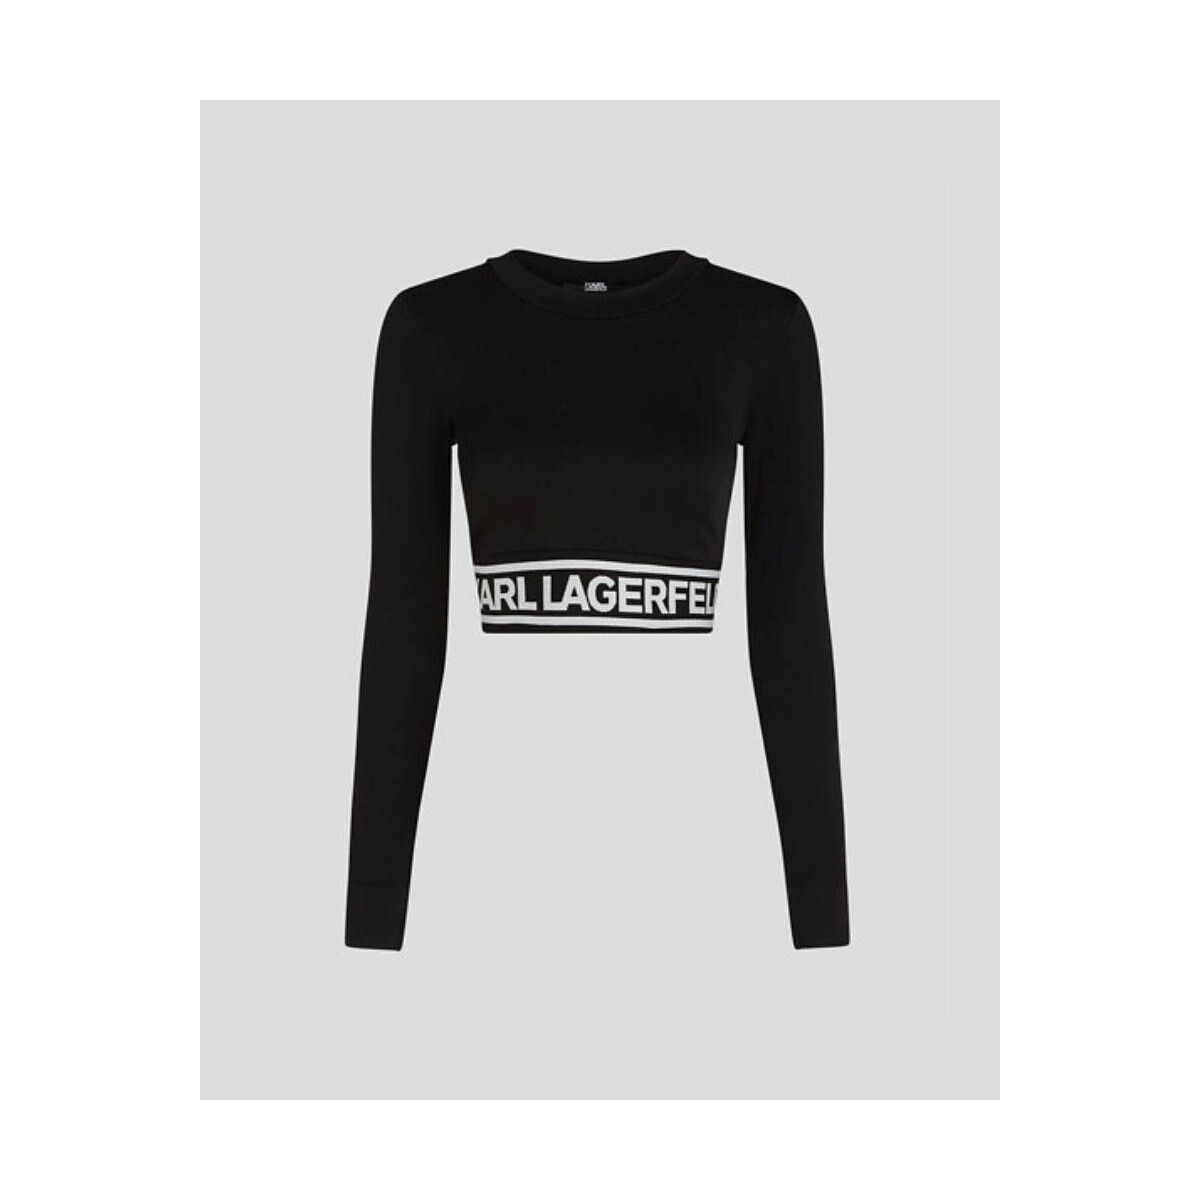 Oblačila Ženske Puloverji Karl Lagerfeld 240W1716 SEAMLESS LOGO Črna